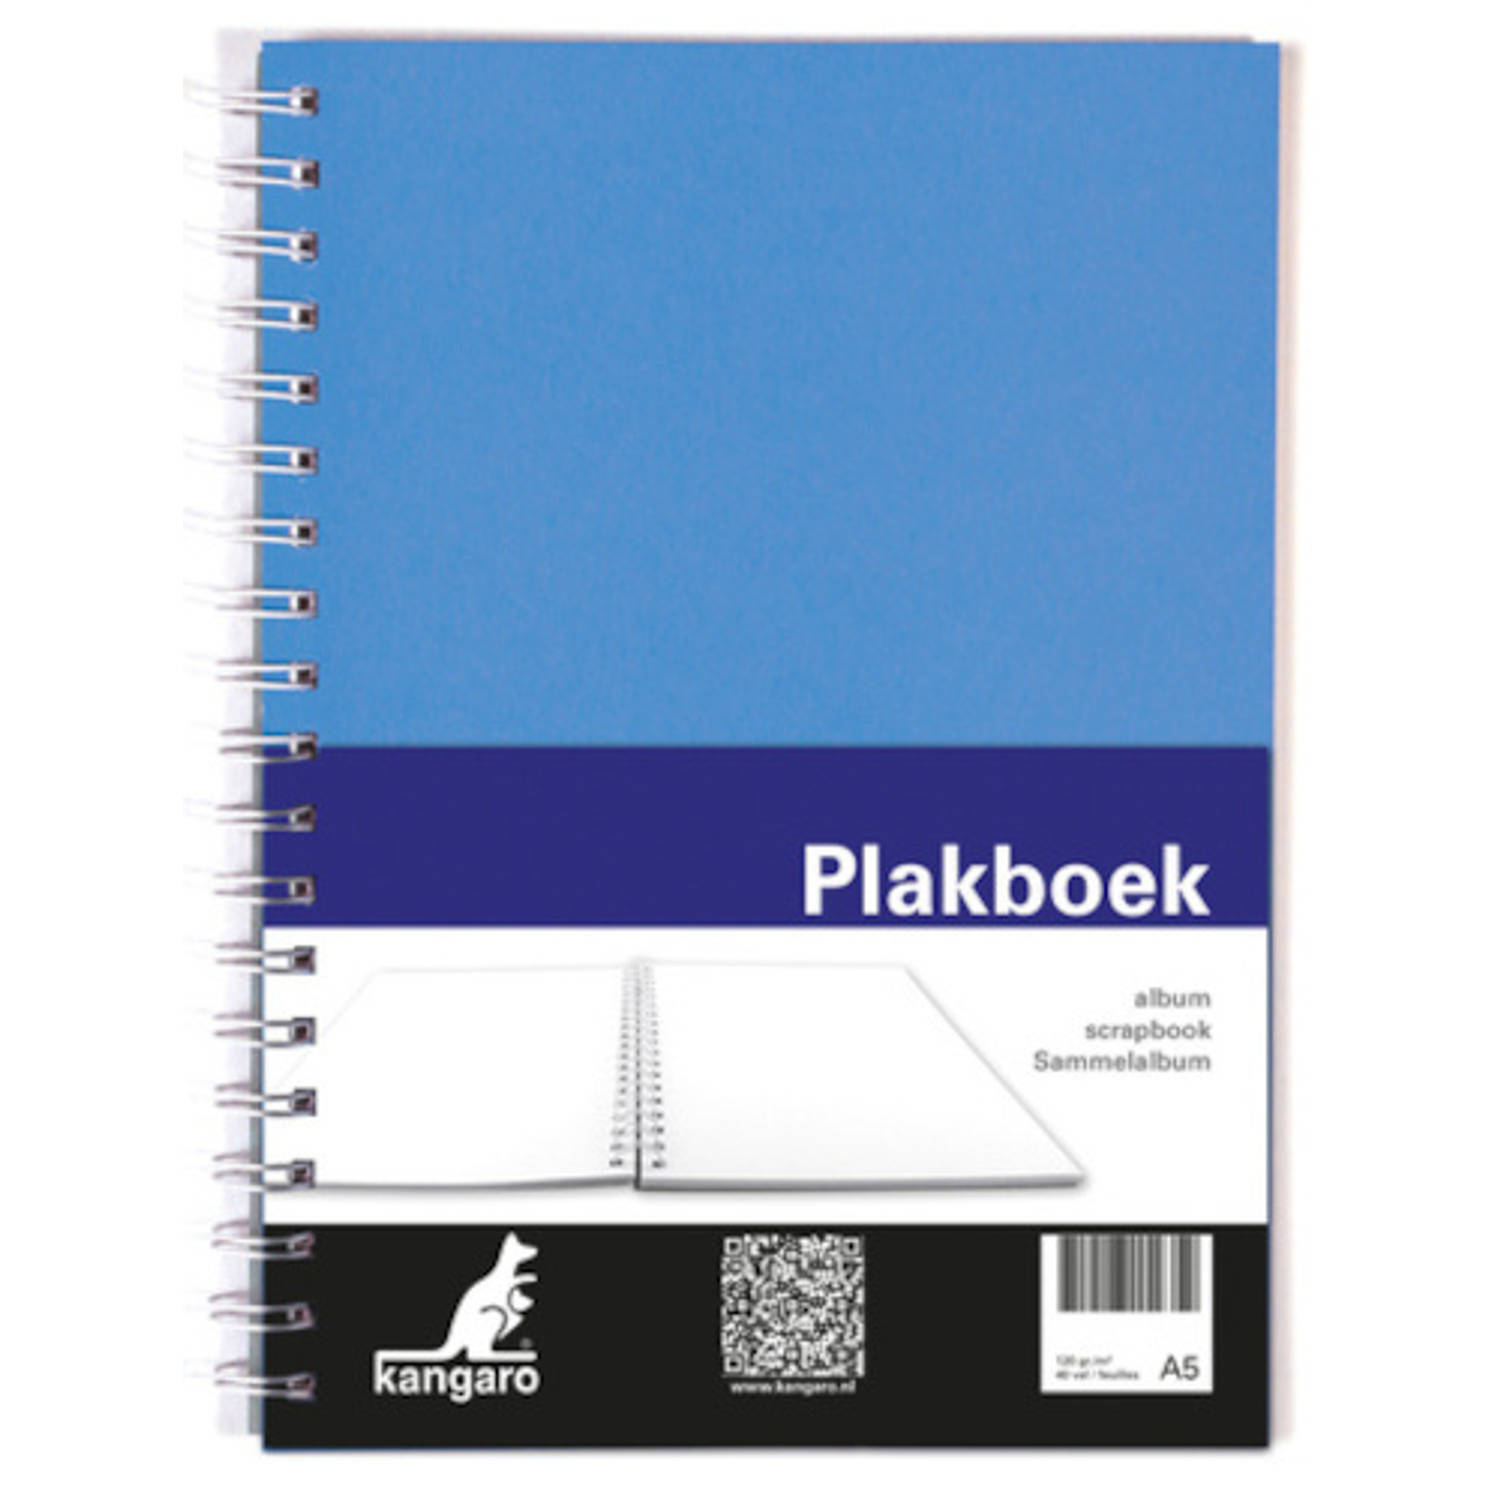 Kangaro Plakboek 25 X 19 Cm 120 Grams A5 Blauw 40 Vellen